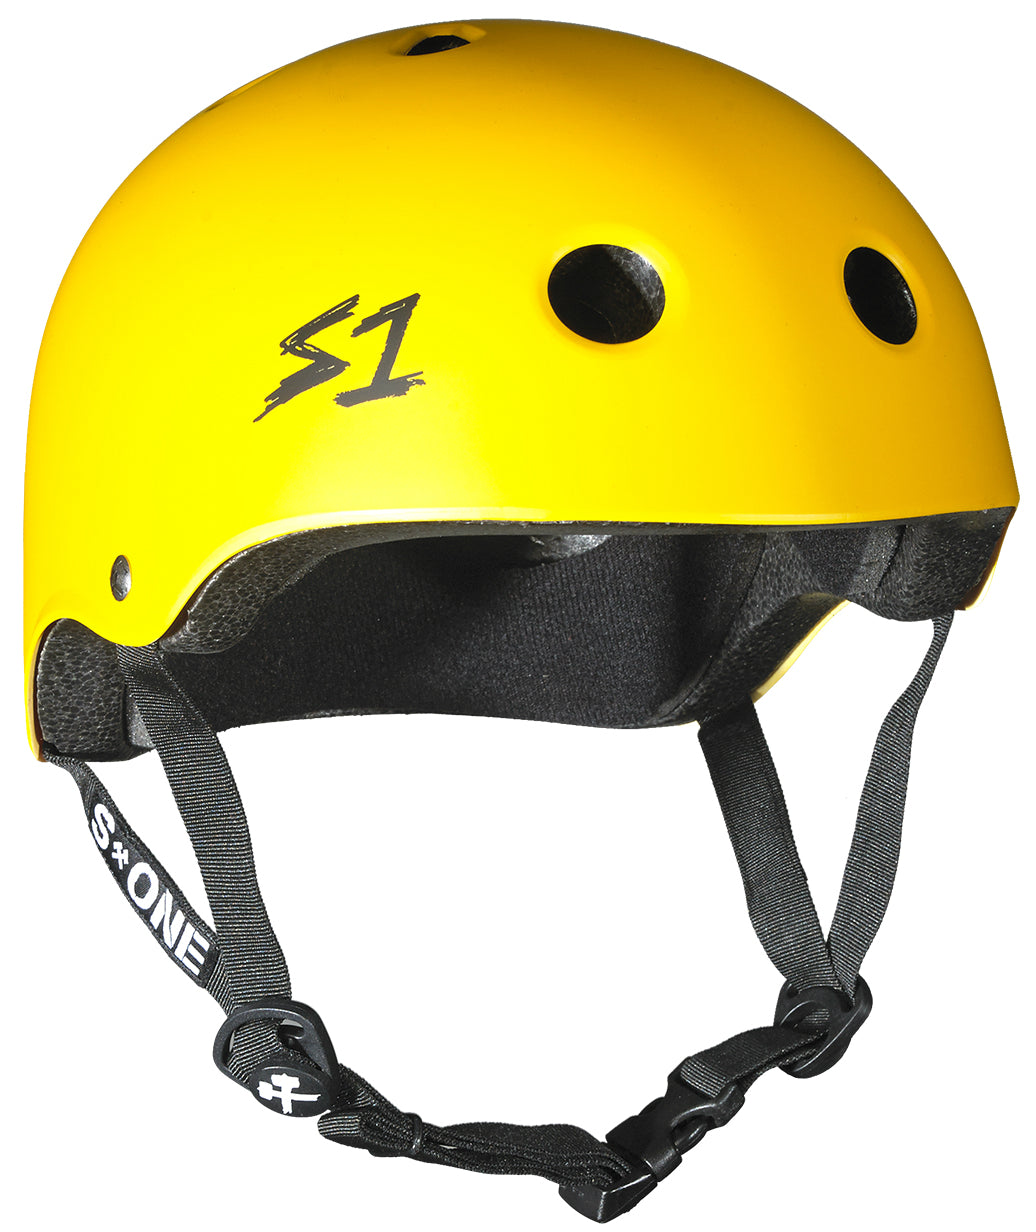 S1 Lifer Helmet - Casque Jaune mât avec sangles noires